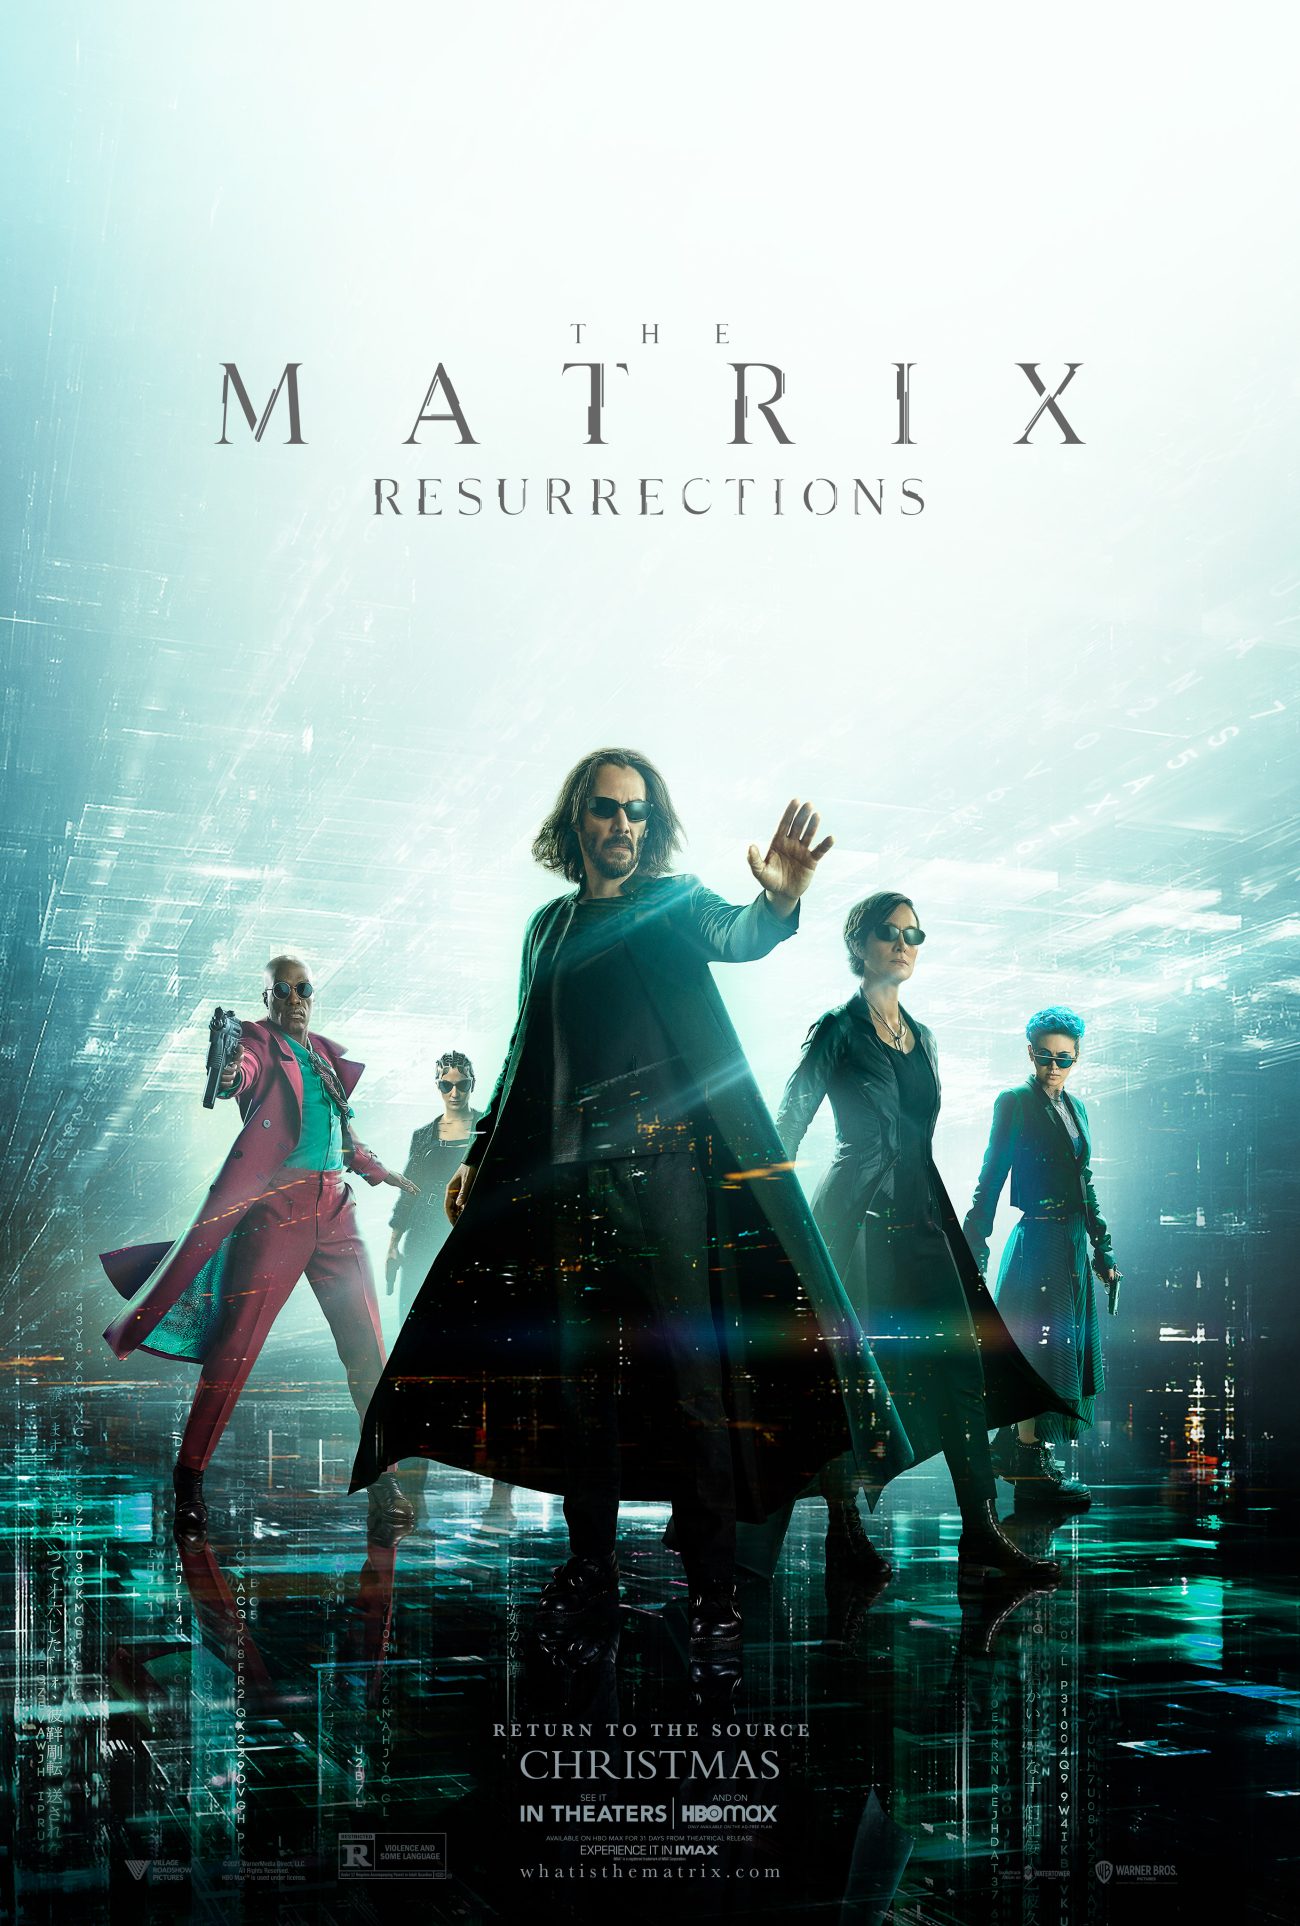 MATRIX 1300x1926 - Matrix Resurrections Review